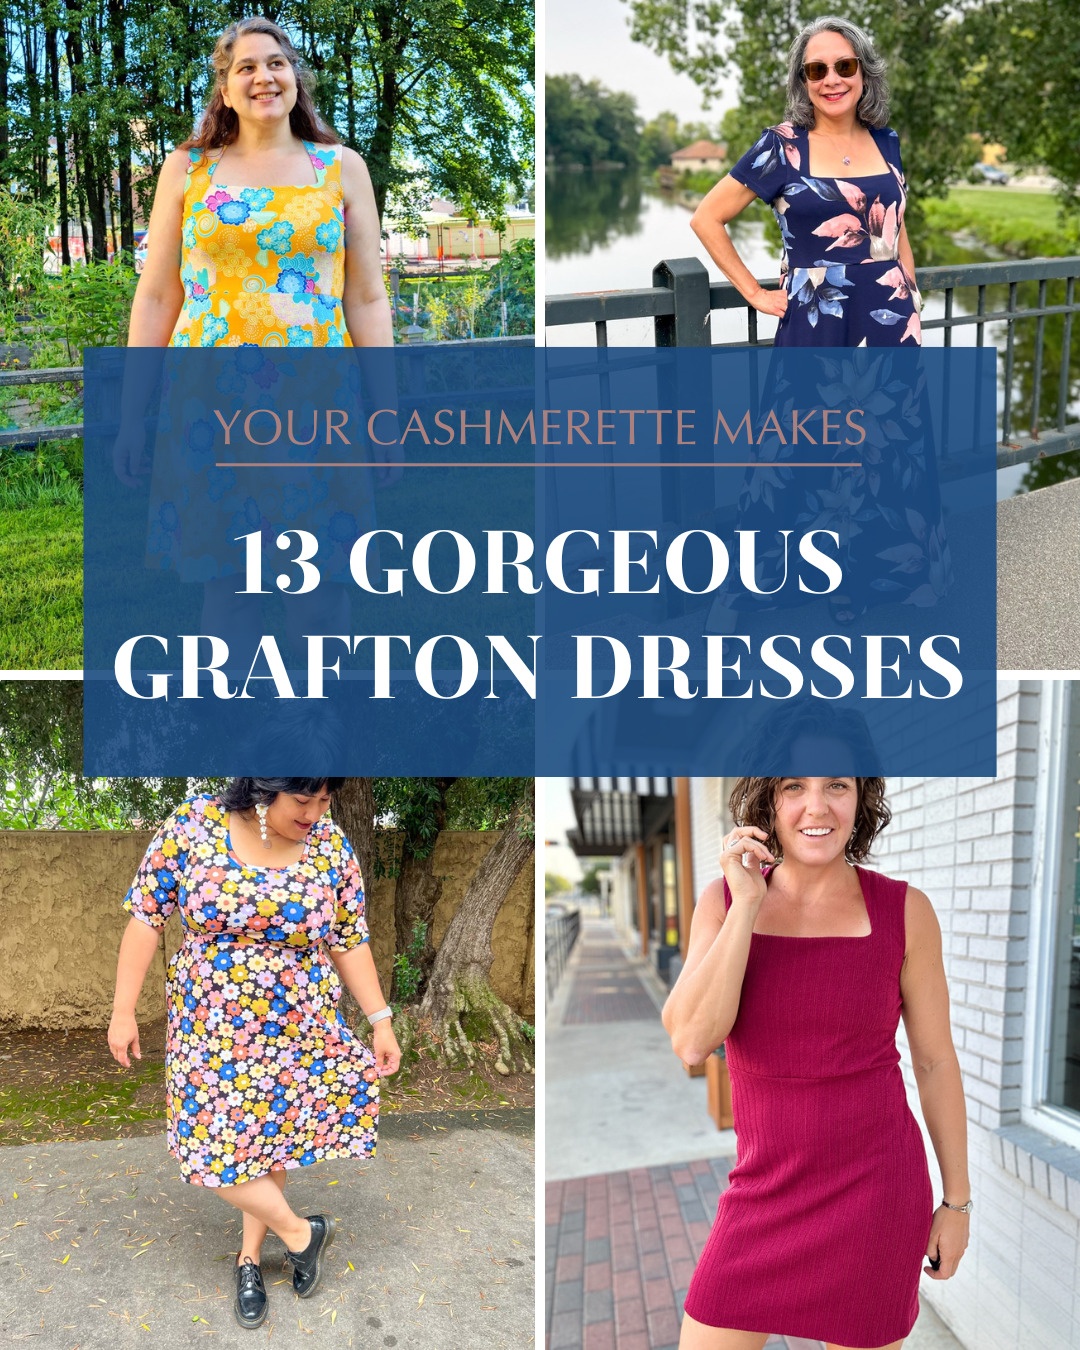 Your Cashmerette Makes: 13 Gorgeous Grafton Dresses